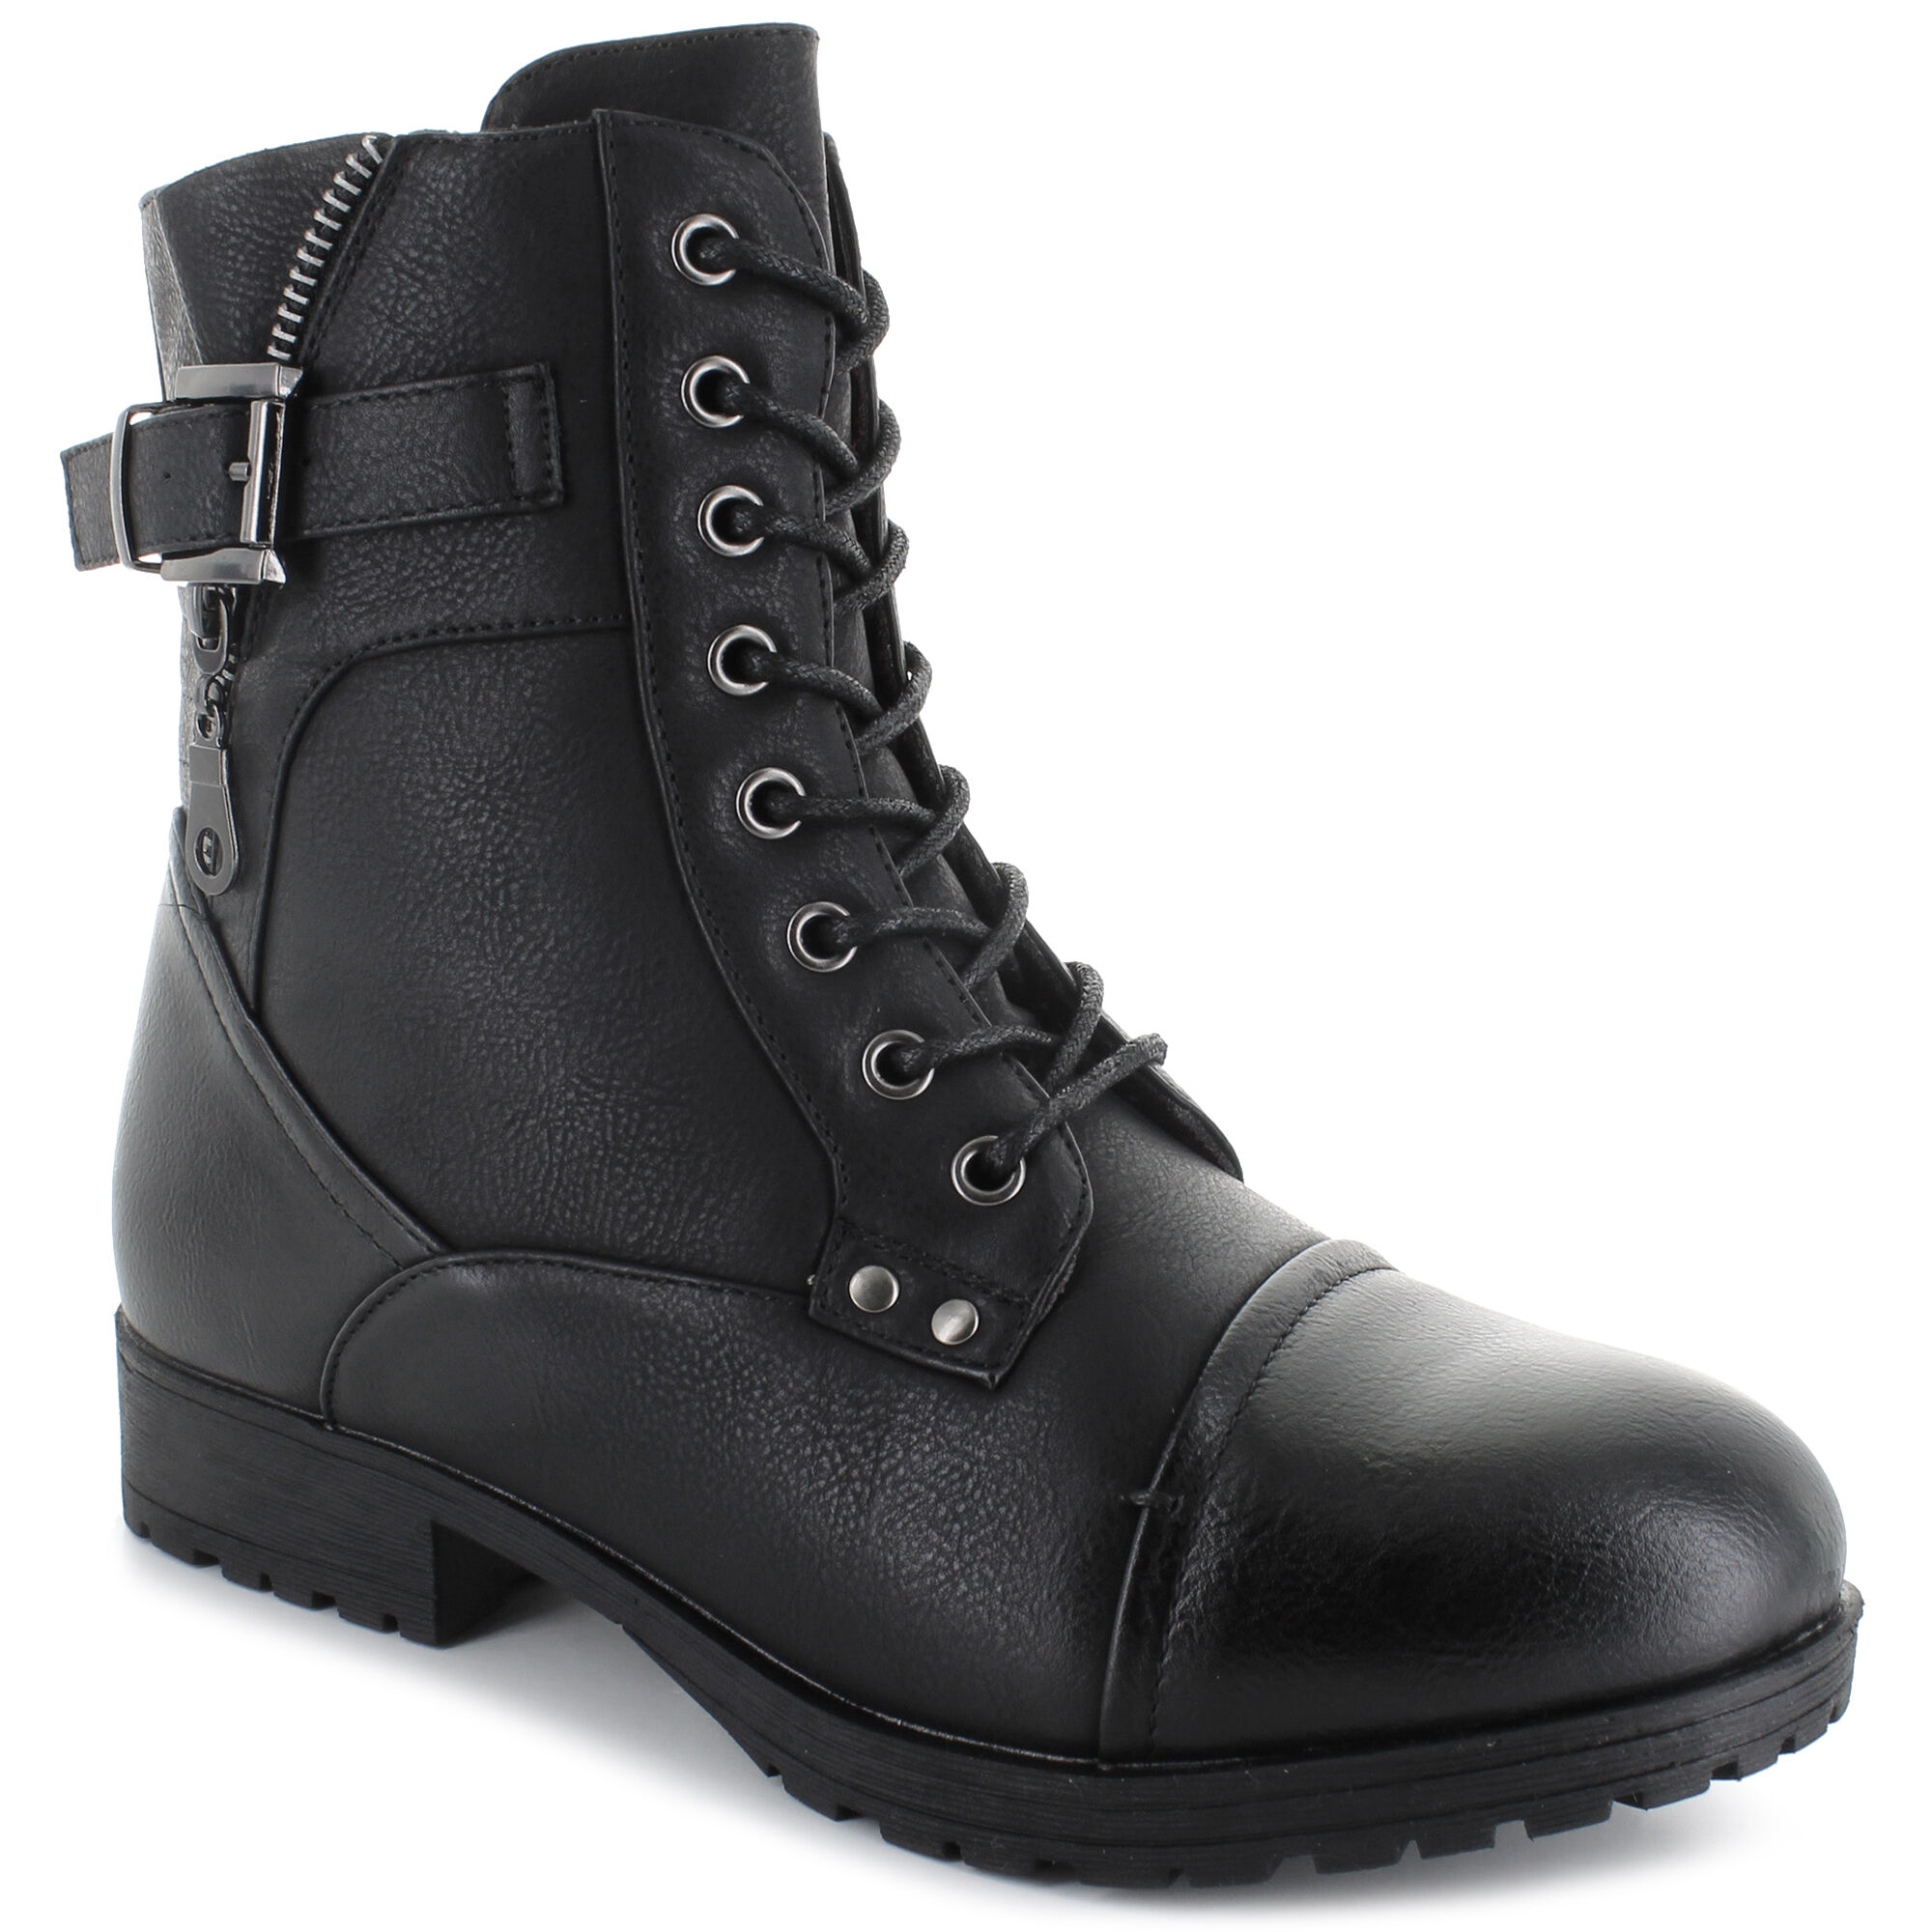 Women's Combat Boots | Shop Now at SHOE 